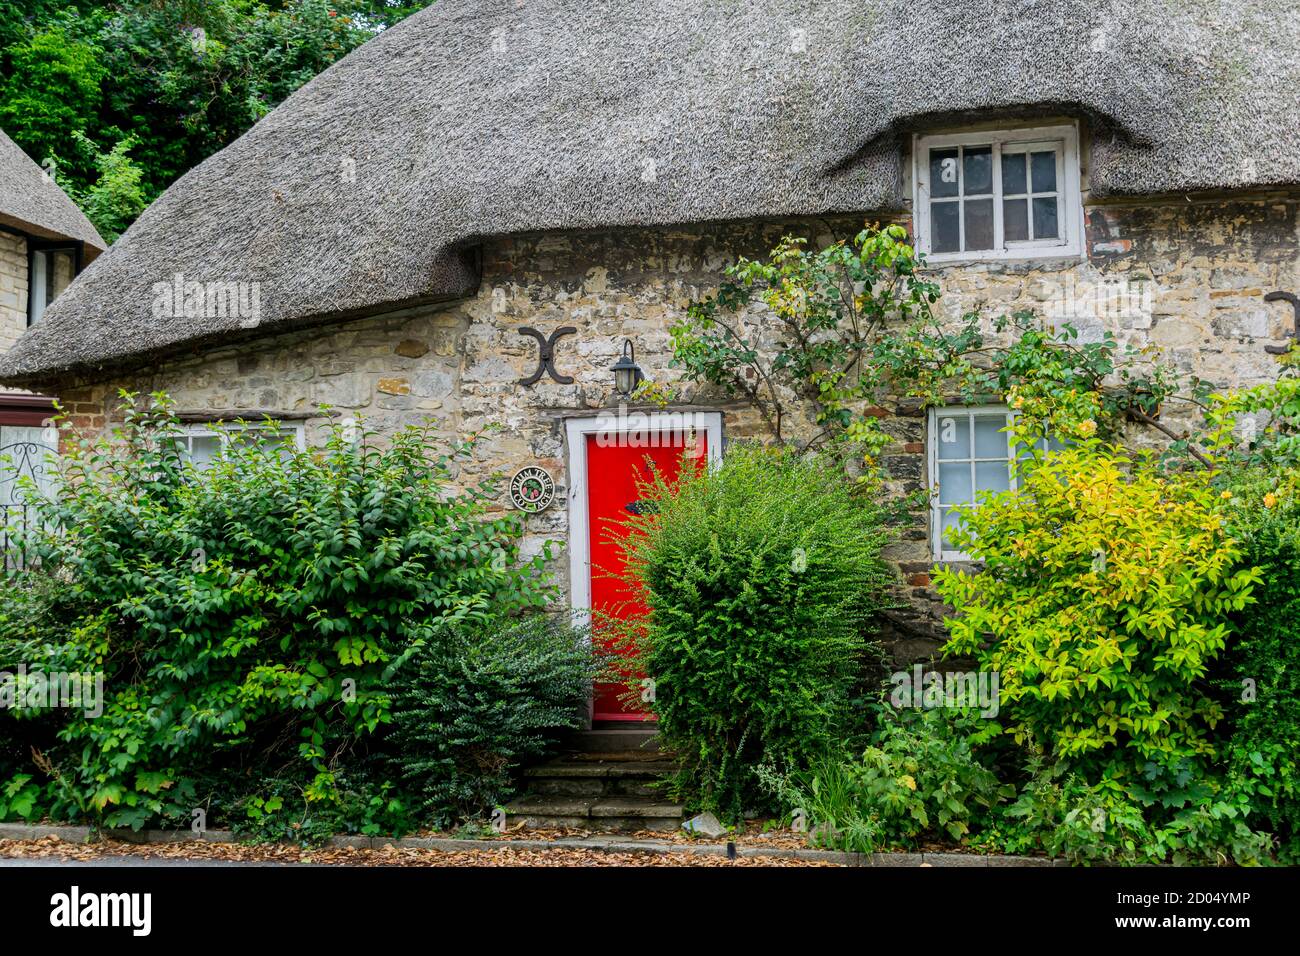 West Lulworth, Vereinigtes Königreich - 19 July 2020: Schönes reetgedeckte Häuschen mit roter Tür und Fensterläden, einzigartiges Dorset buntes Haus Stockfoto